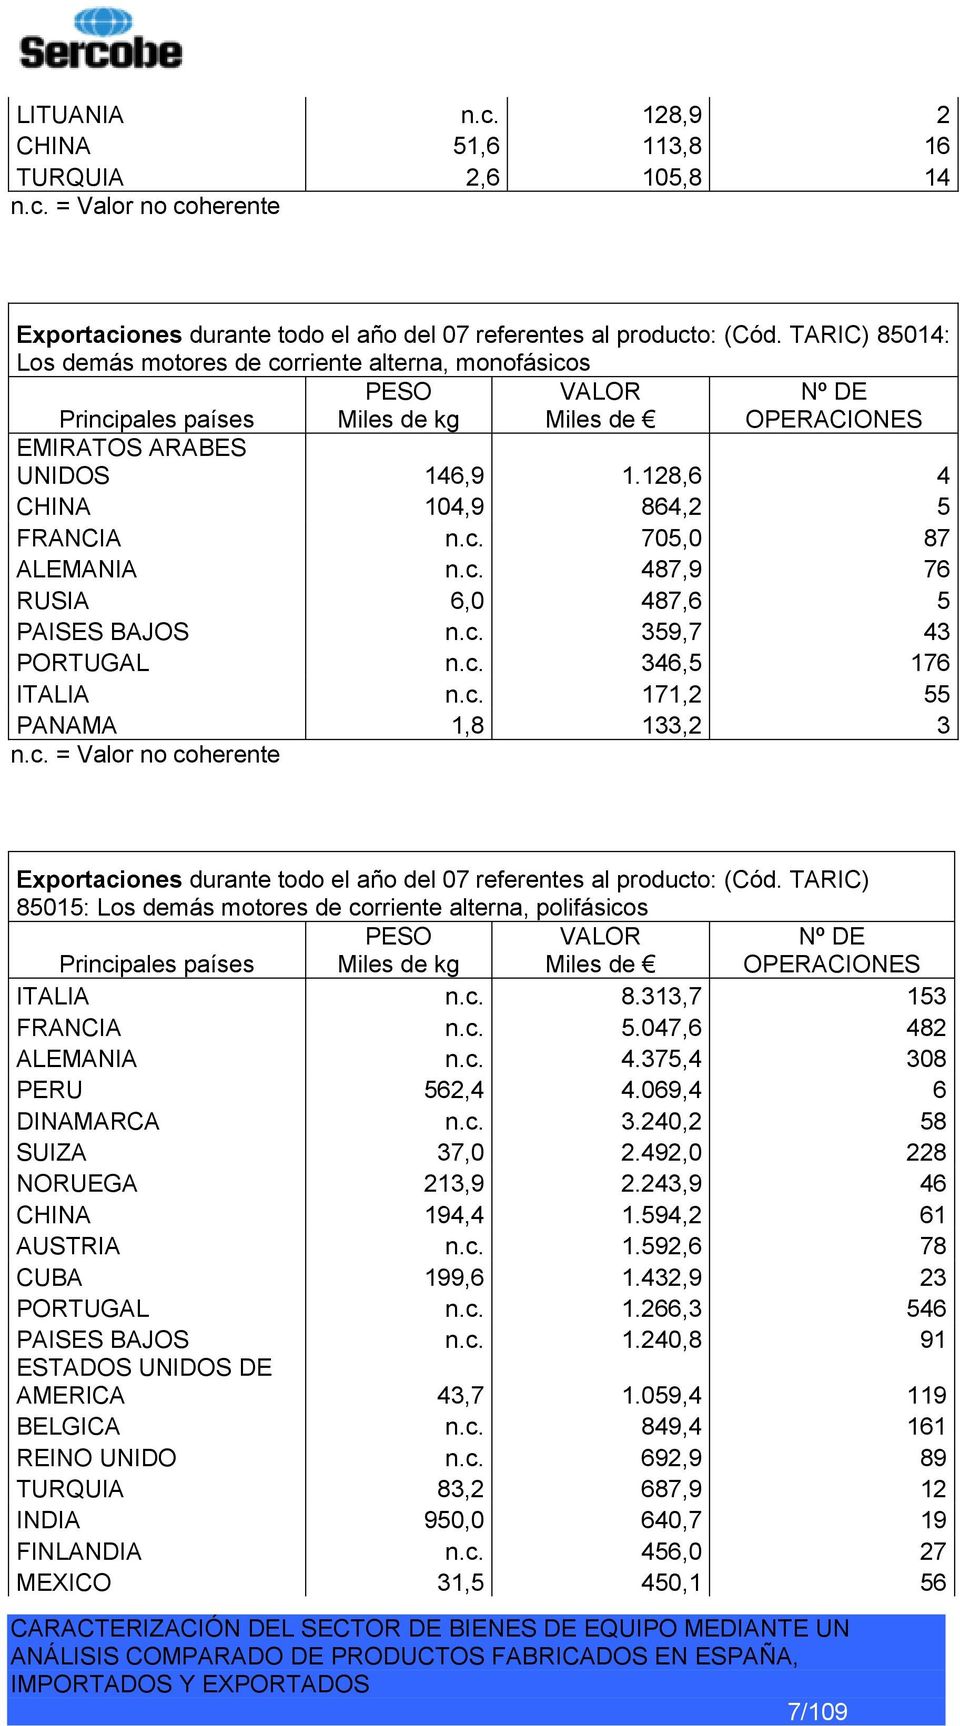 c. 359,7 43 PORTUGAL n.c. 346,5 176 ITALIA n.c. 171,2 55 PANAMA 1,8 133,2 3 n.c. = Valor no coherente Exportaciones durante todo el año del 07 referentes al producto: (Cód.